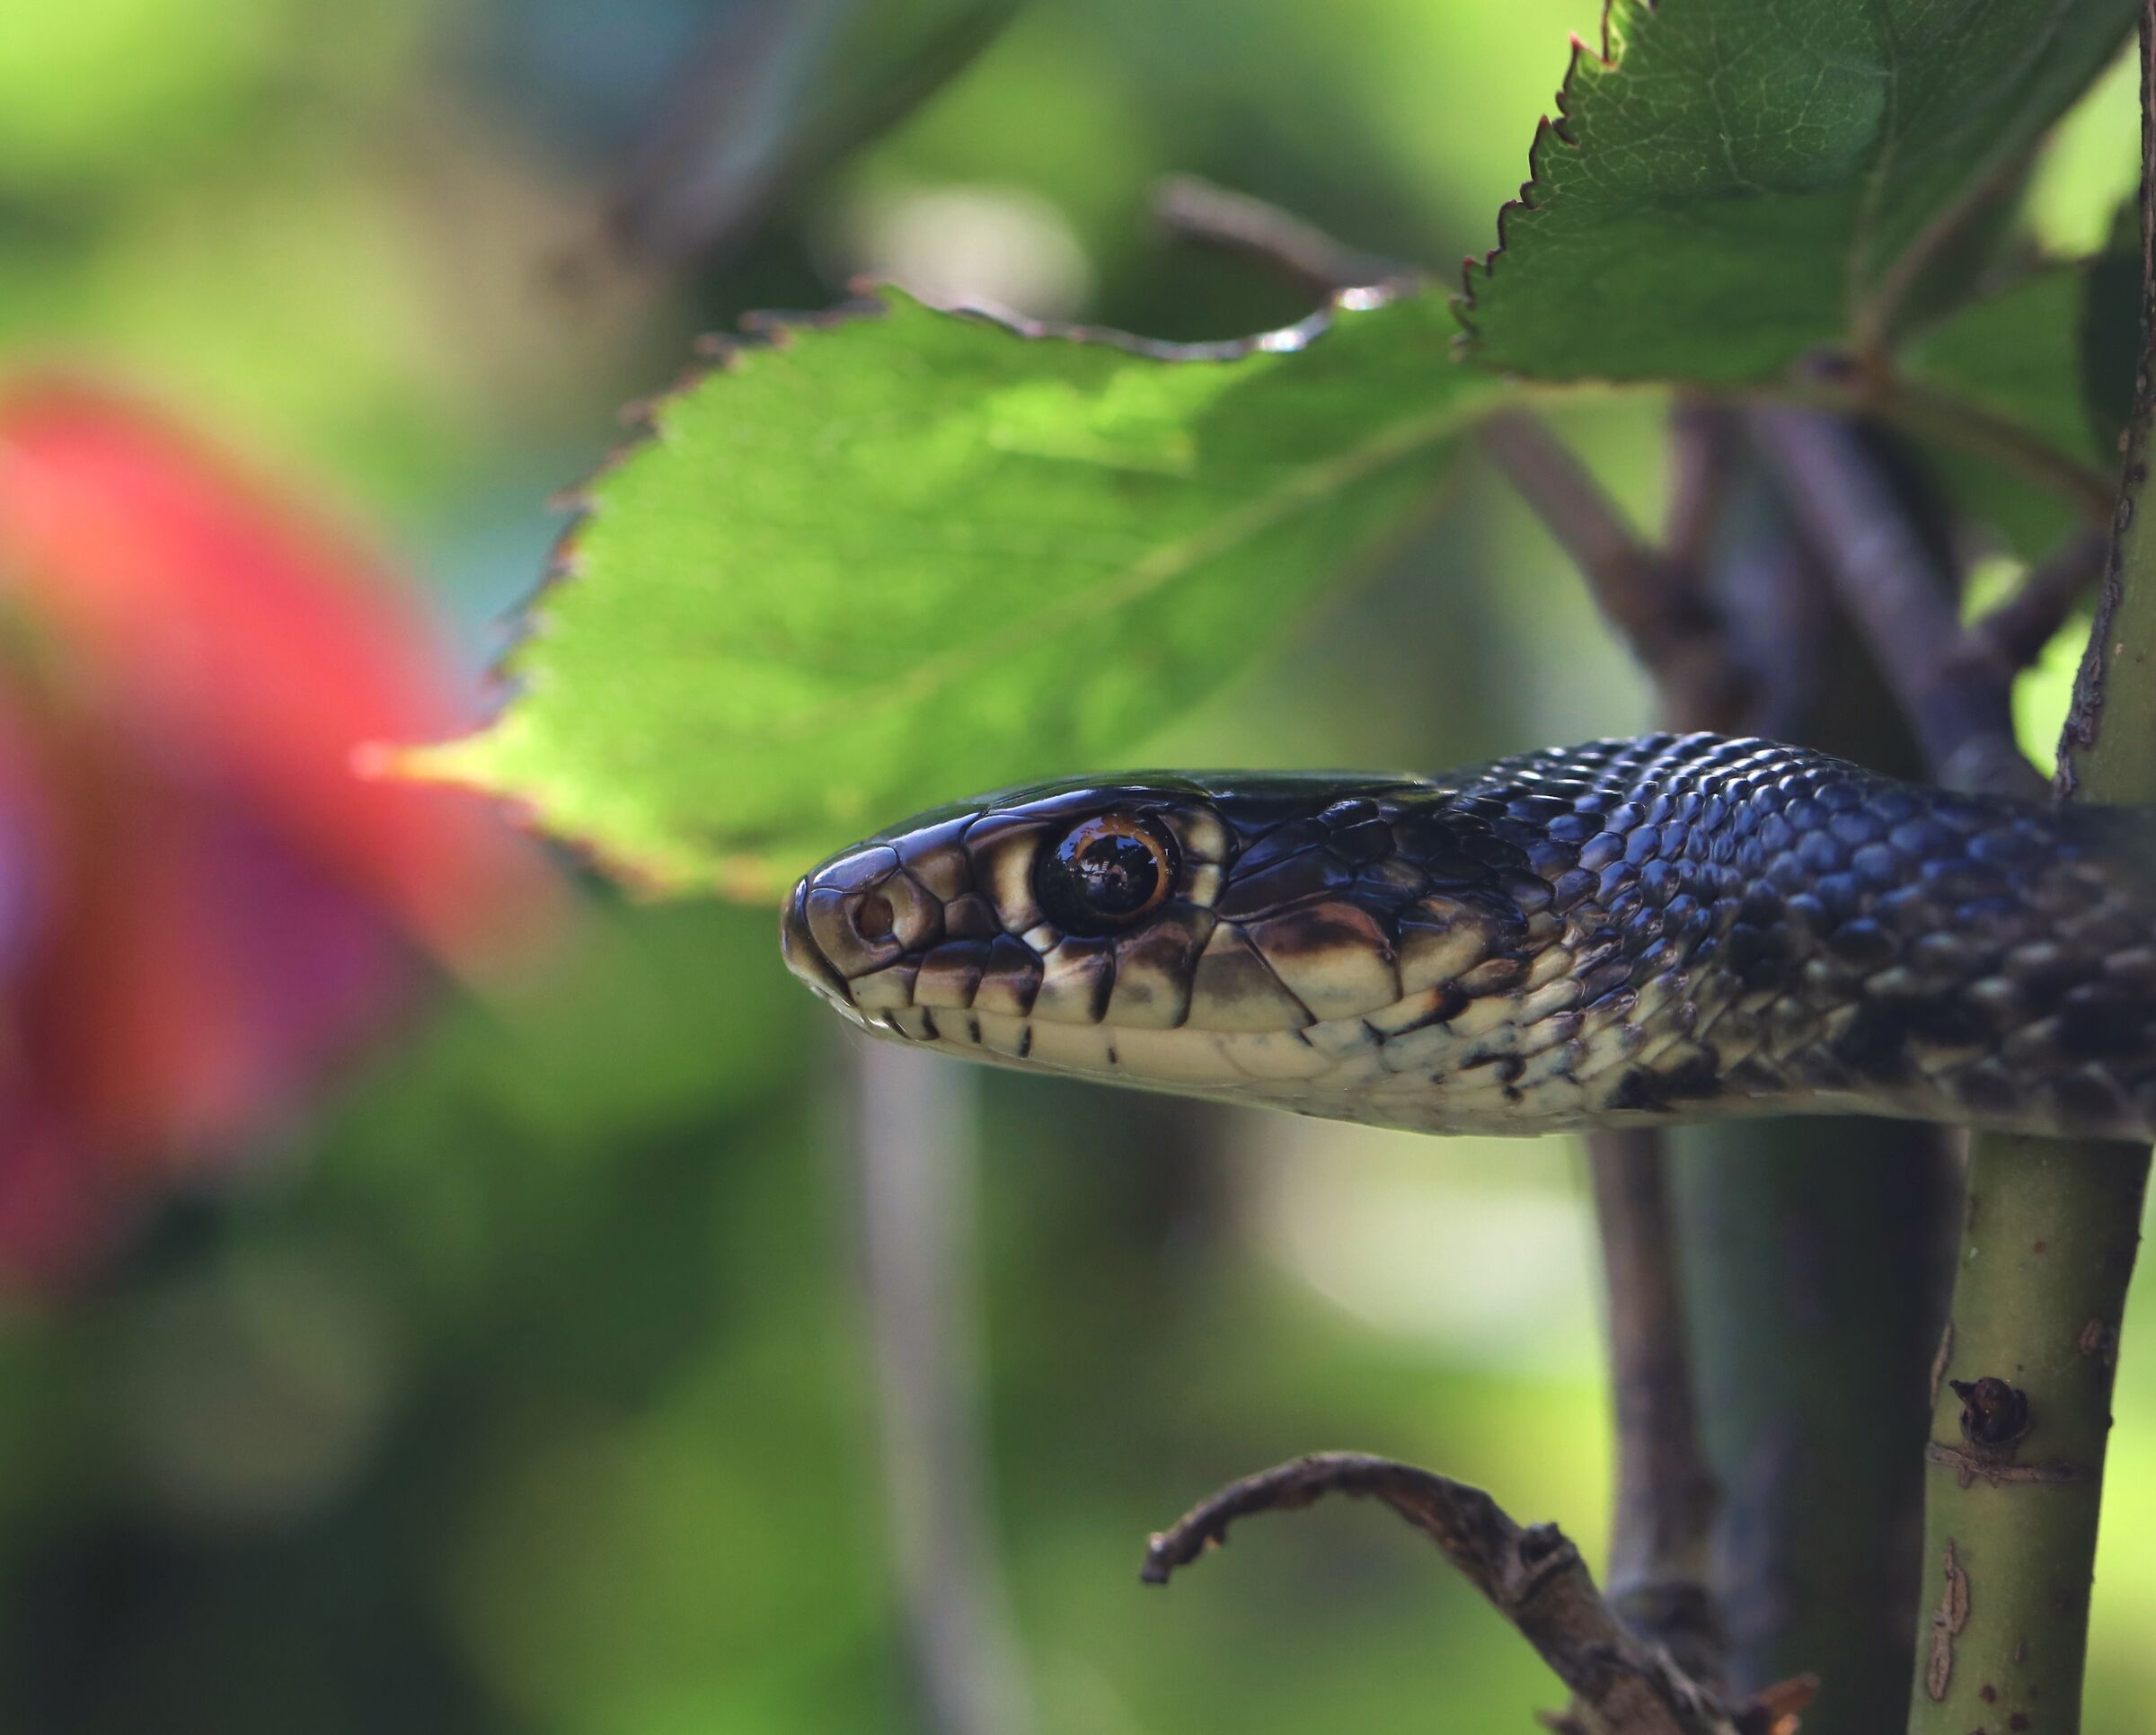 Snake in the garden...